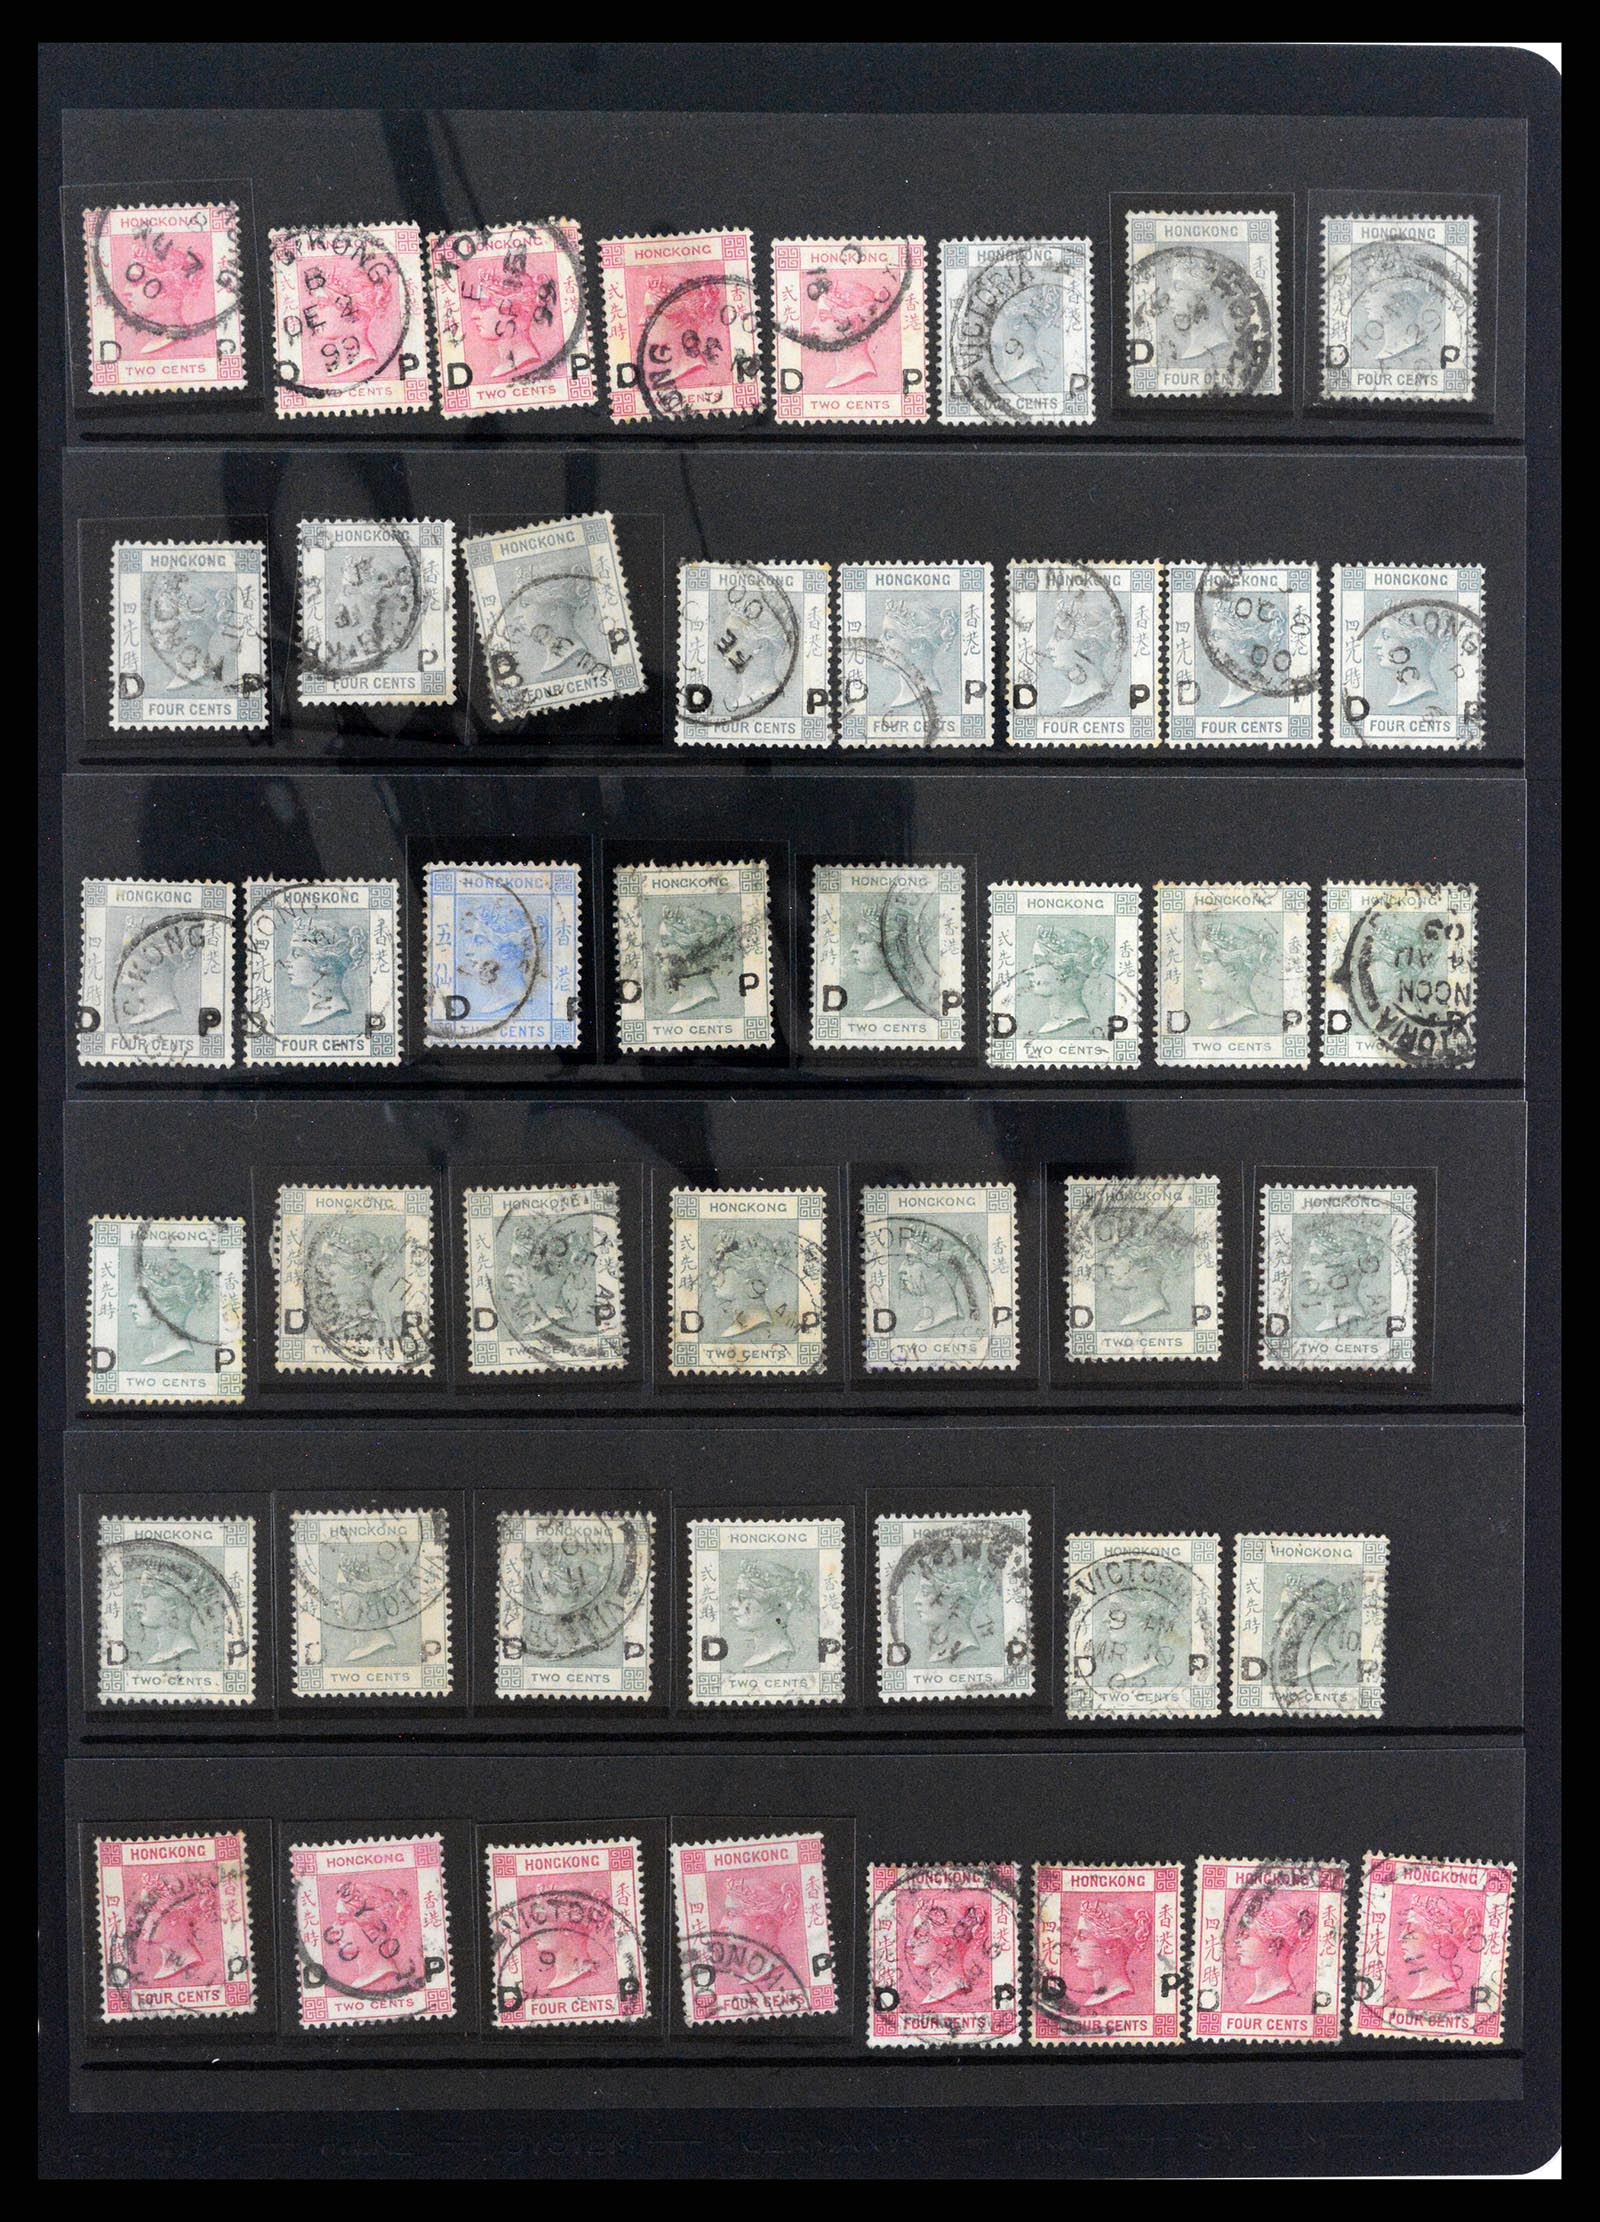 37358 058 - Stamp collection 37358 Hong Kong 1861-1997.